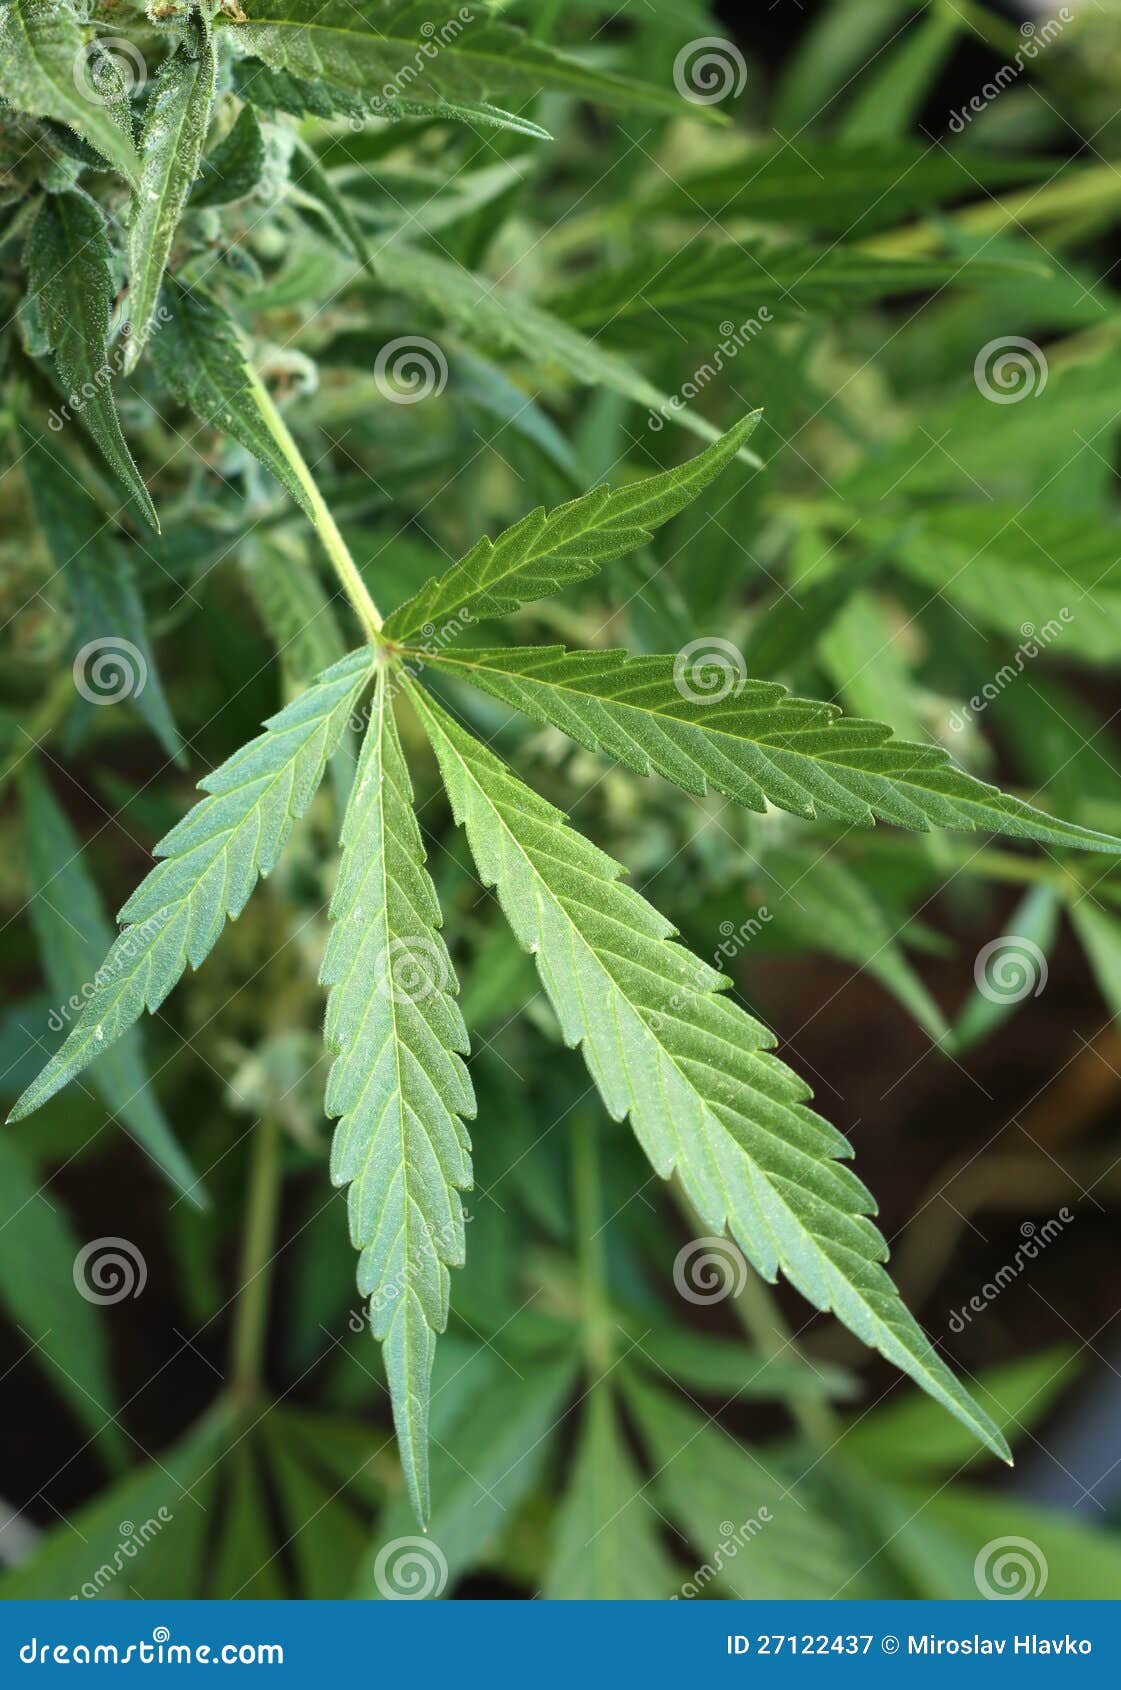 Фото листья марихуаны конопля девушка